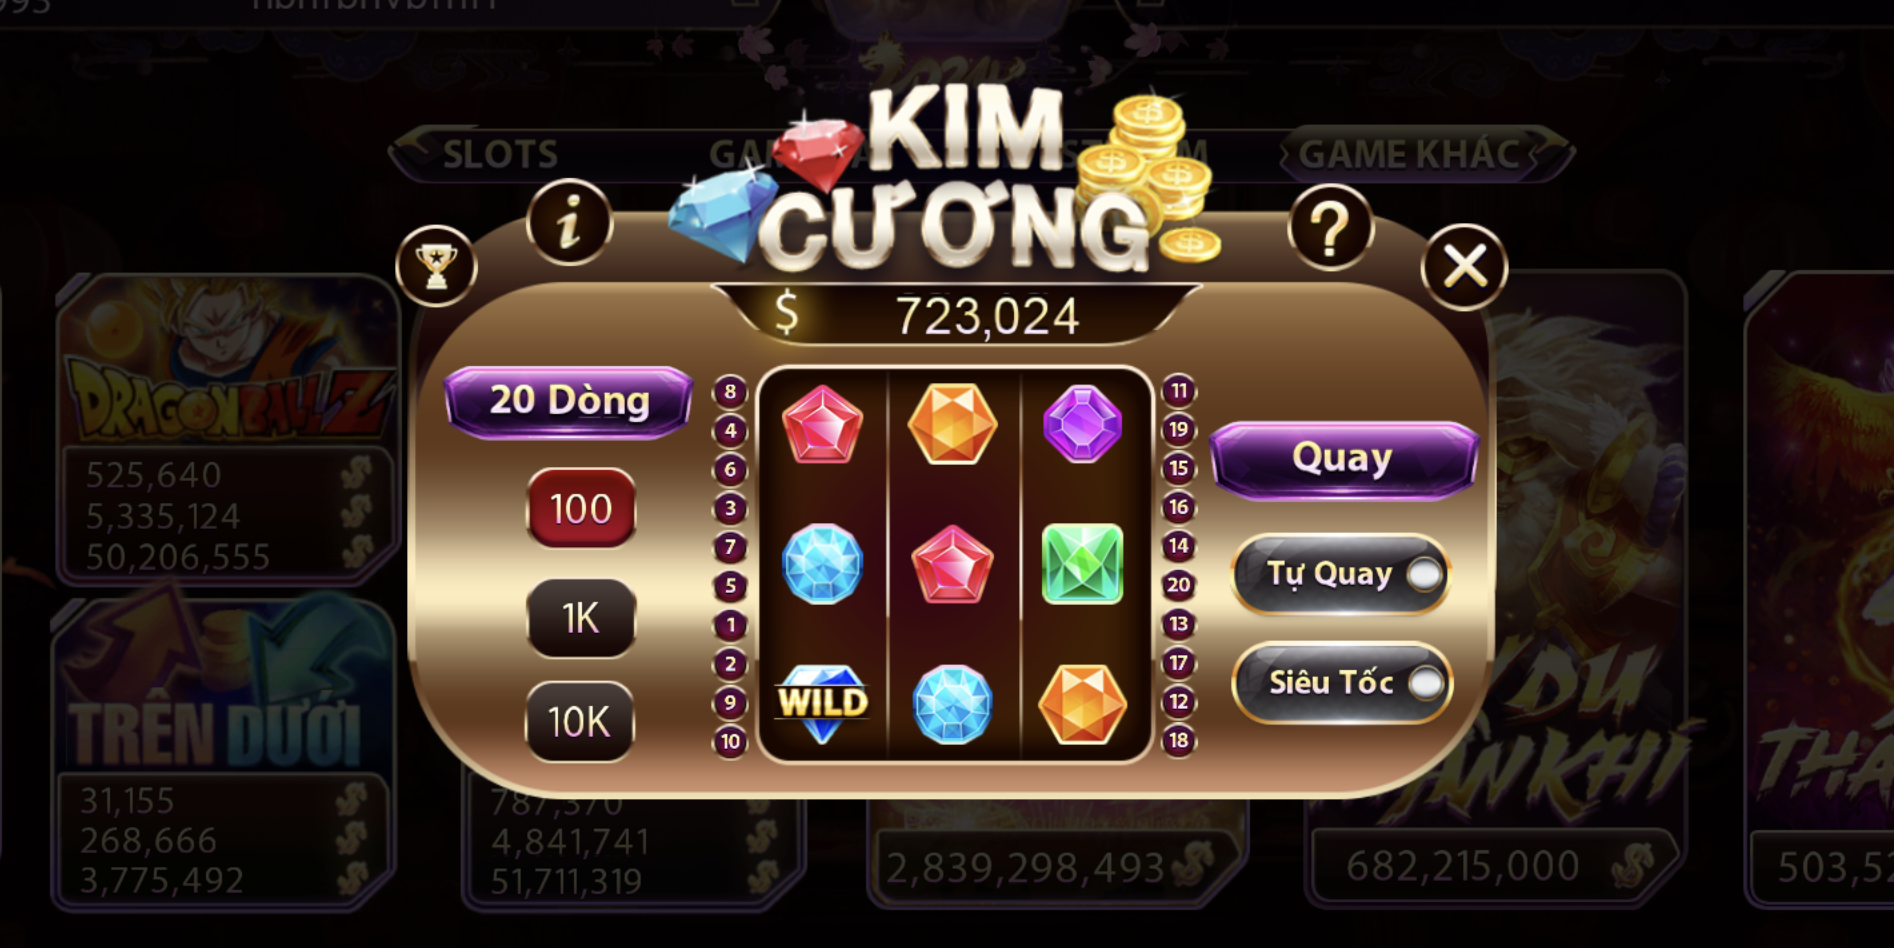 Tổng hợp 5 thủ thuật chơi Kim cương tại Sunwin